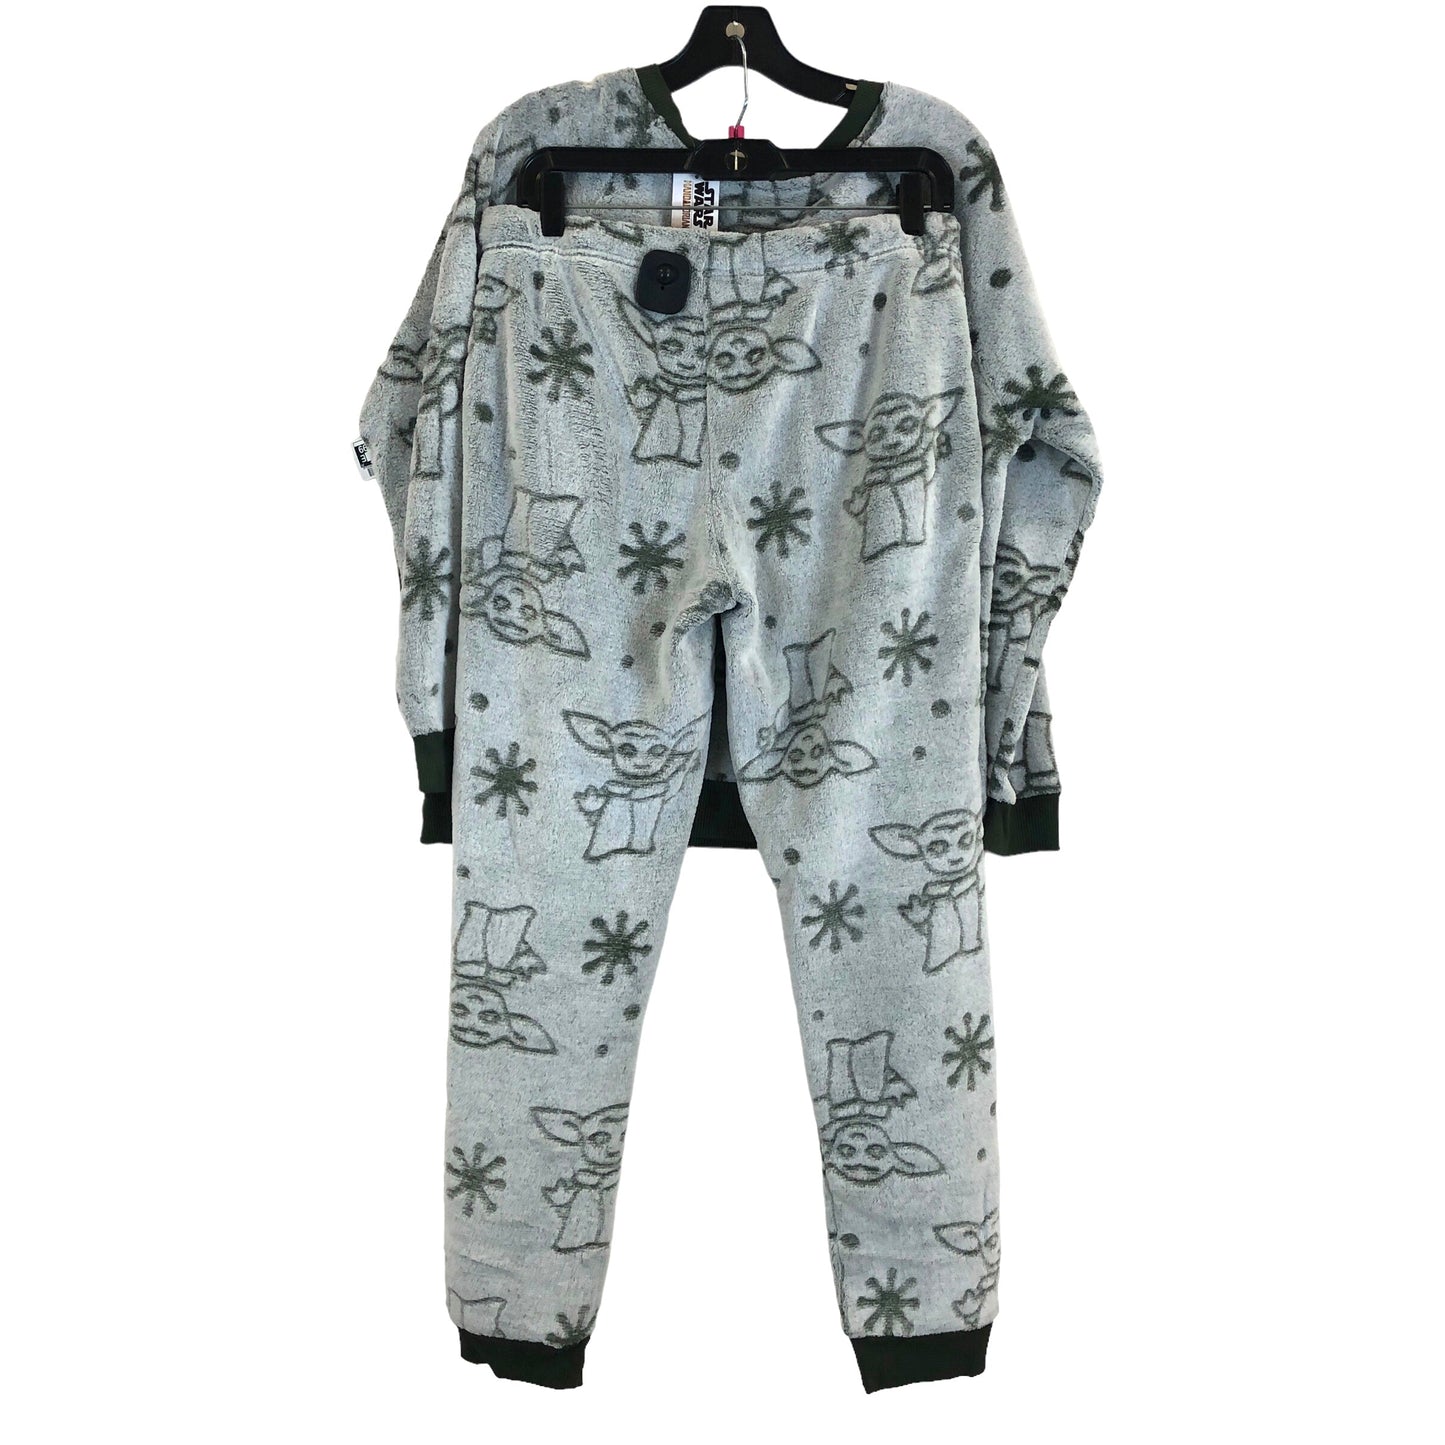 Pajamas 2pc By Starwars Size: M